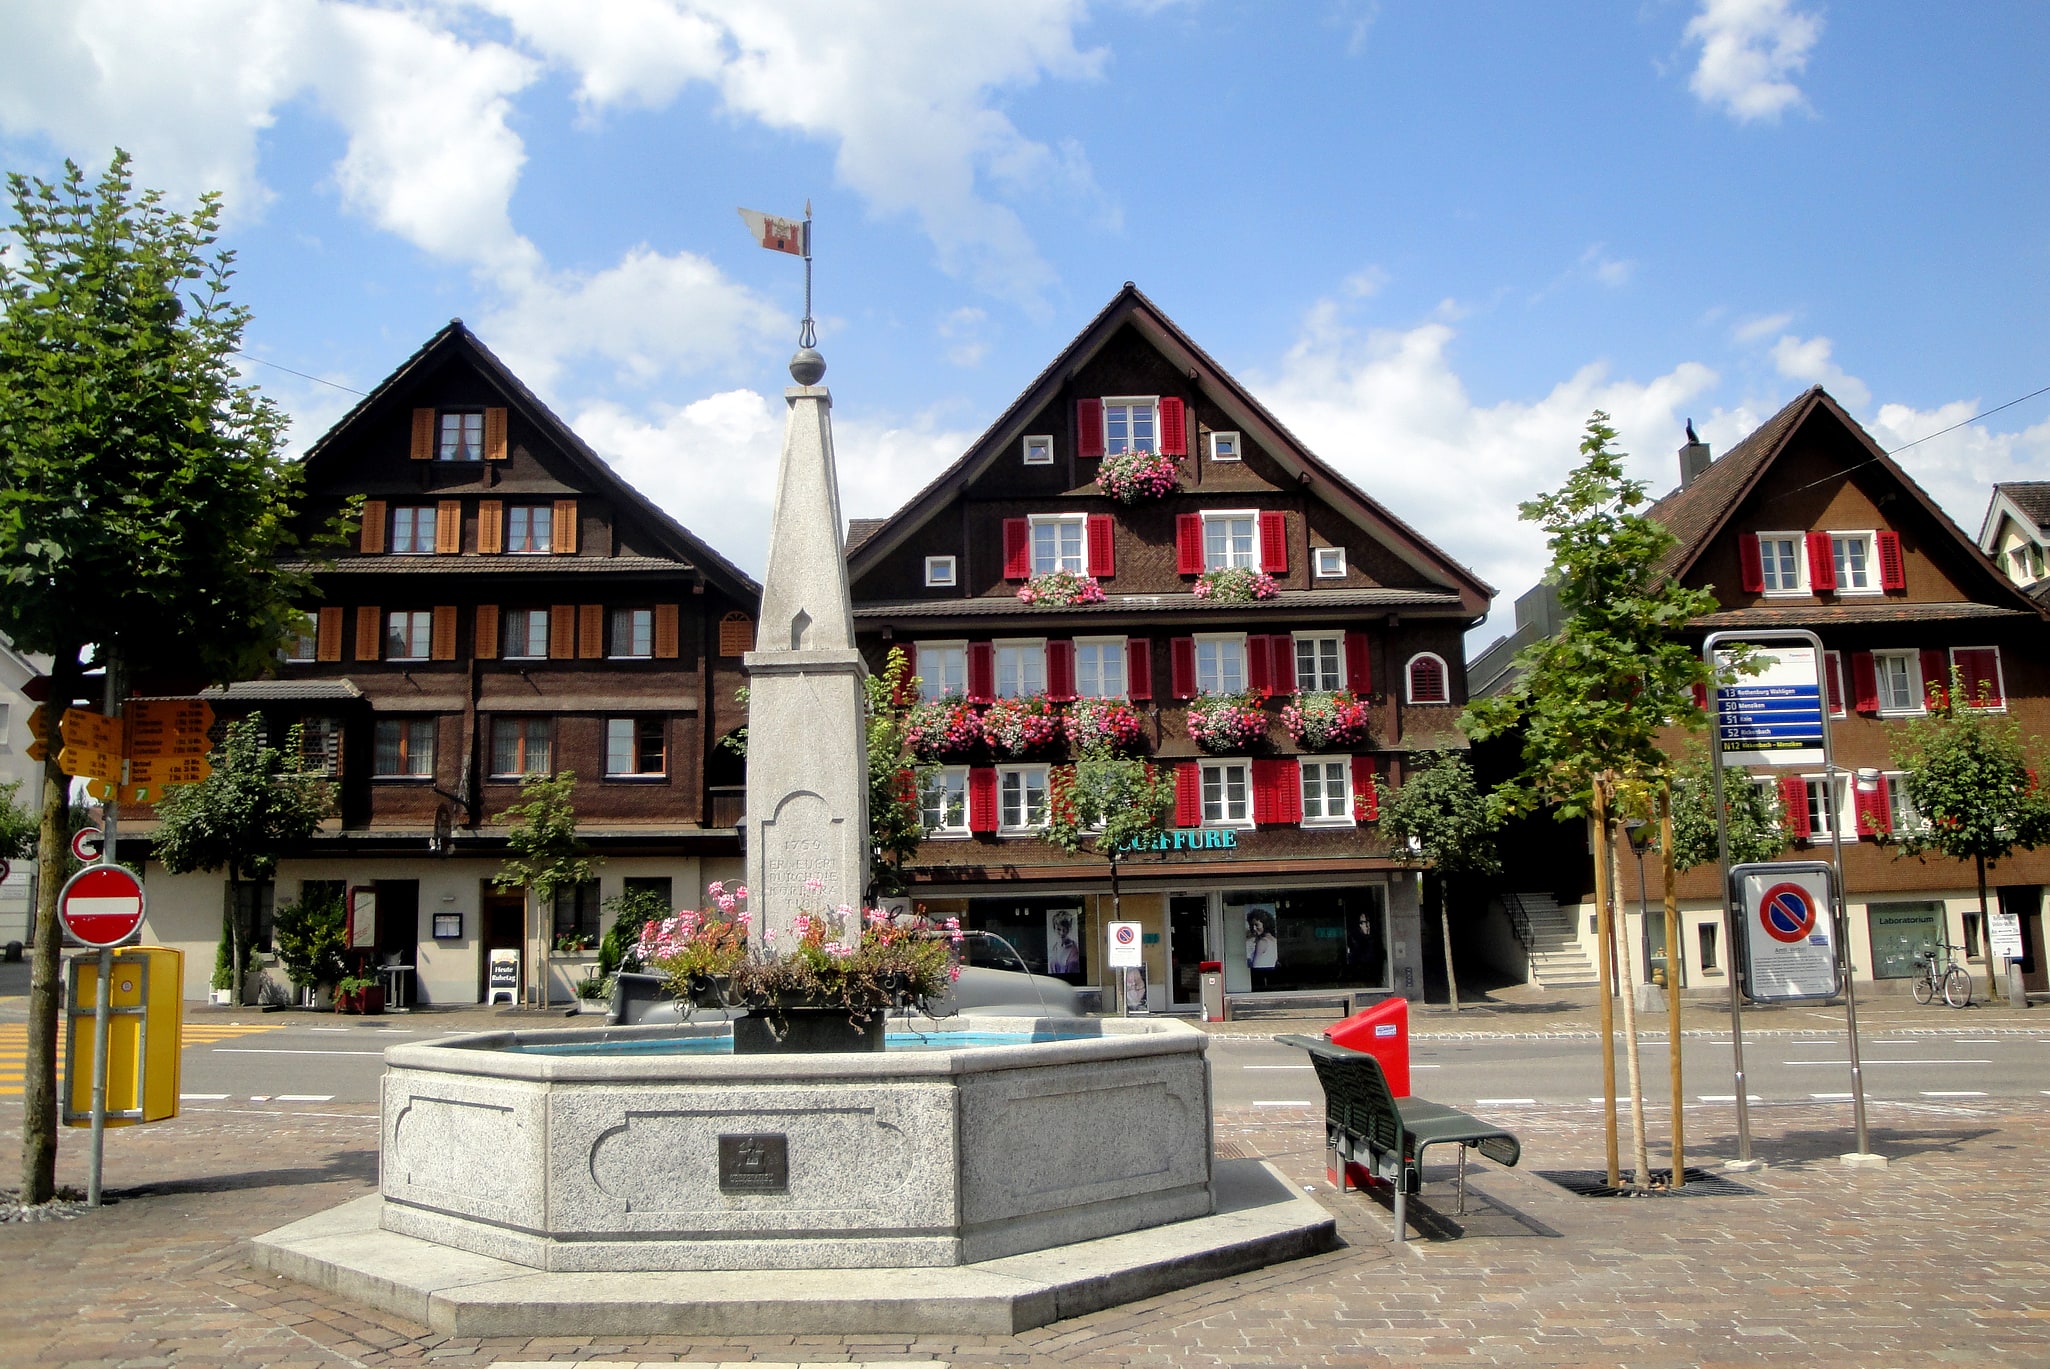 Rothenburg, Switzerland